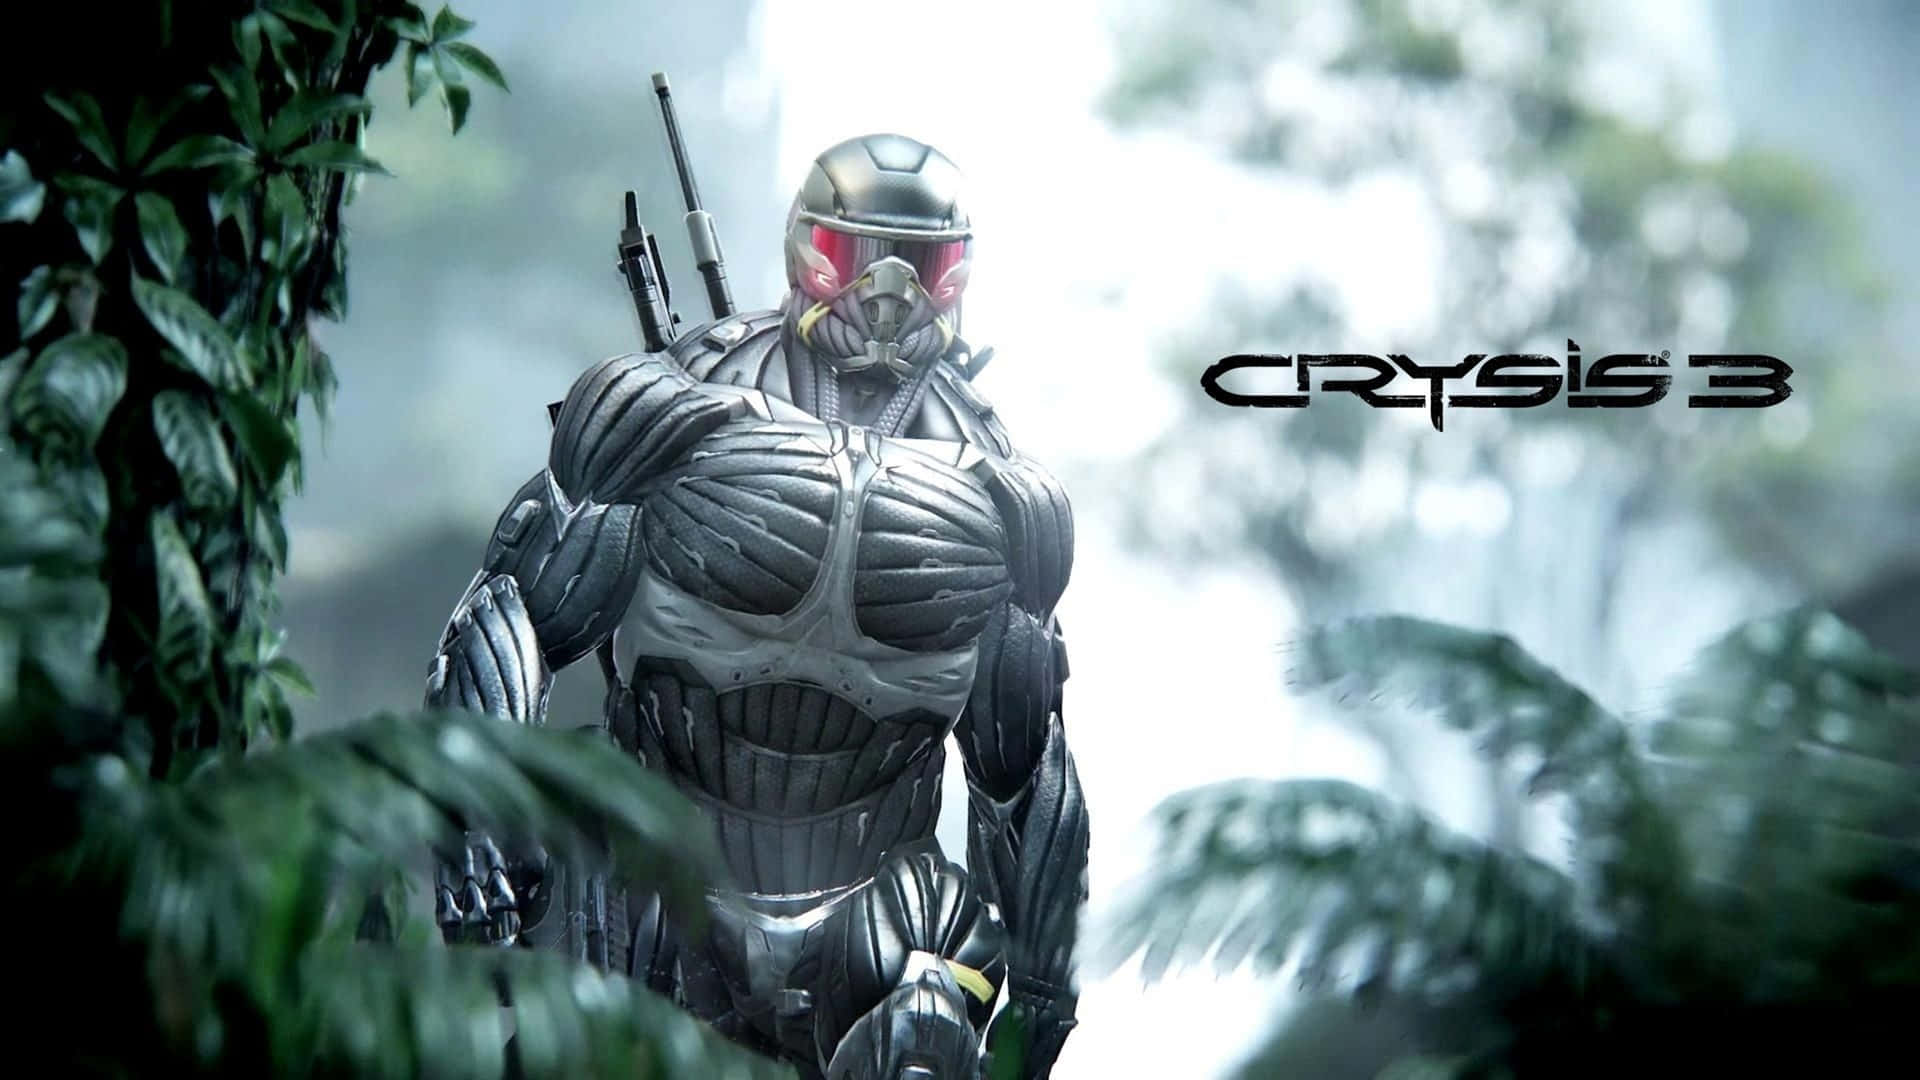 Crysis4k Skyddad Soldat I Skogen Wallpaper